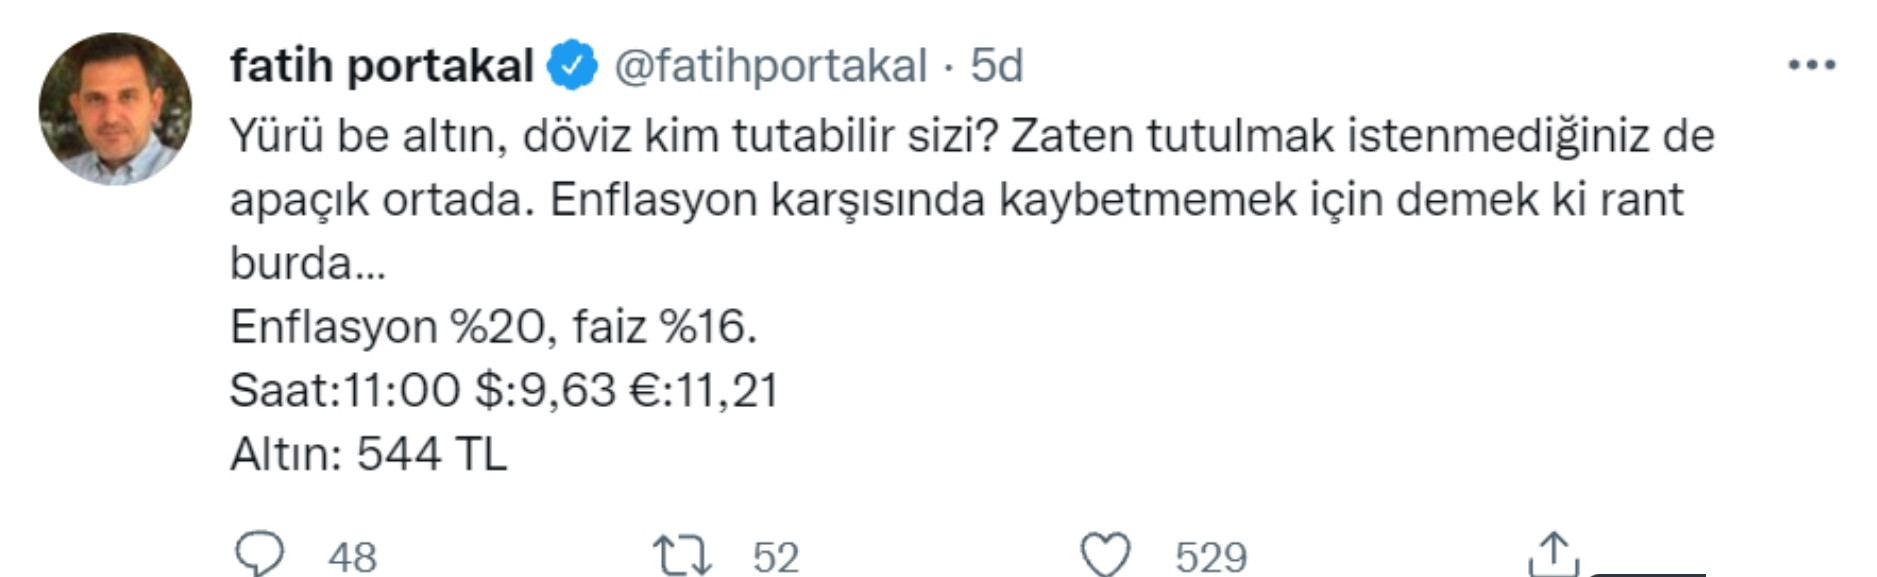 Fatih Portakal'dan Sert Dolar Çıkışı: Yürü Be Döviz! - Resim: 1